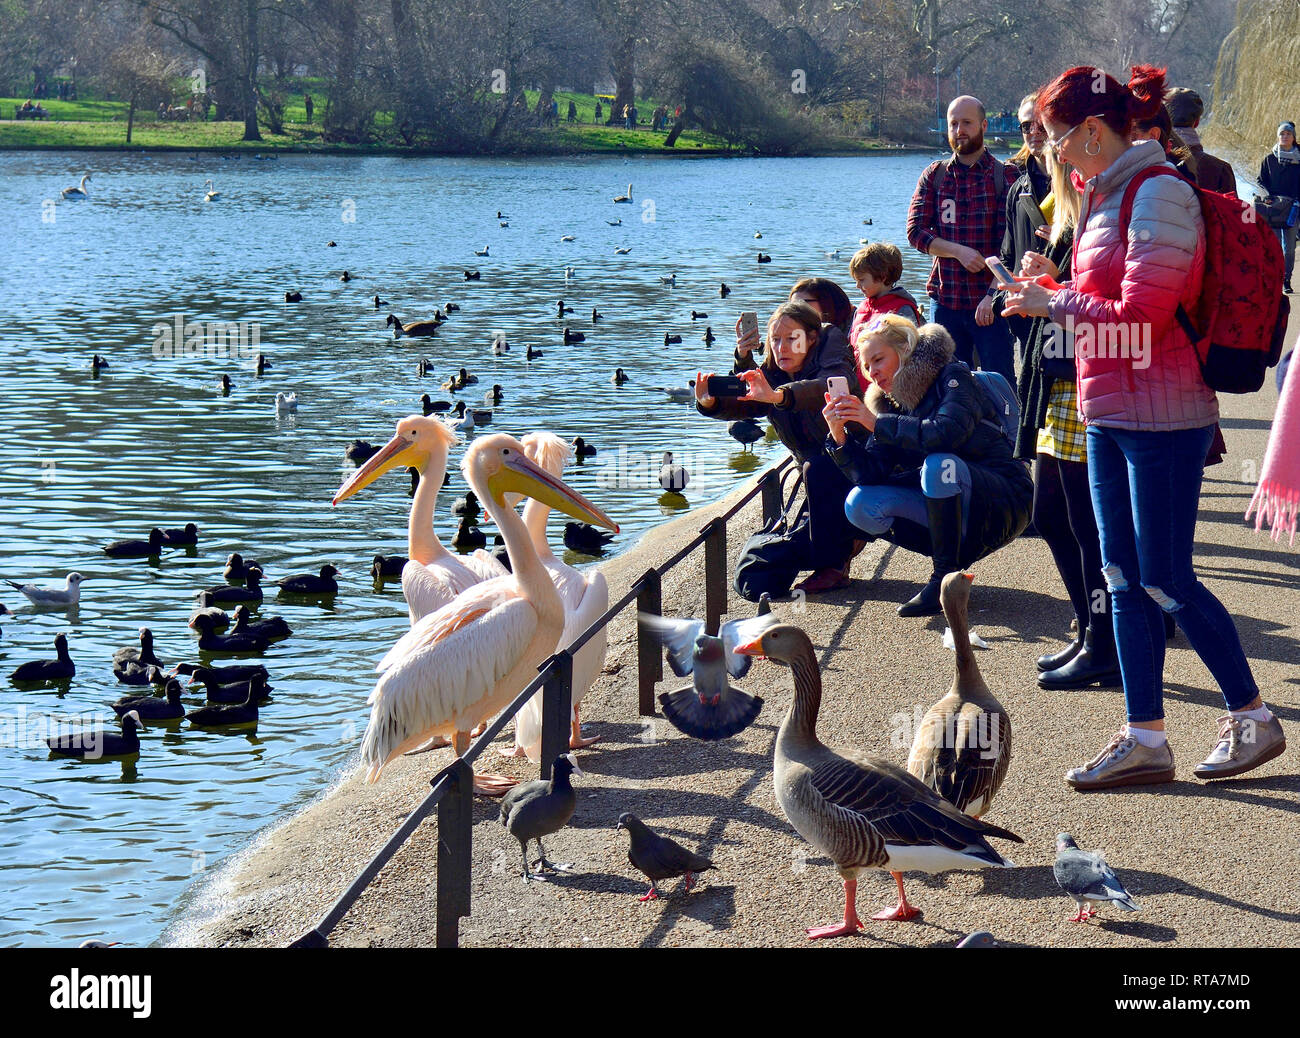 Londra, Inghilterra, Regno Unito. St James Park - turisti fotografare i pellicani in una giornata di sole in febbraio 2019 Foto Stock